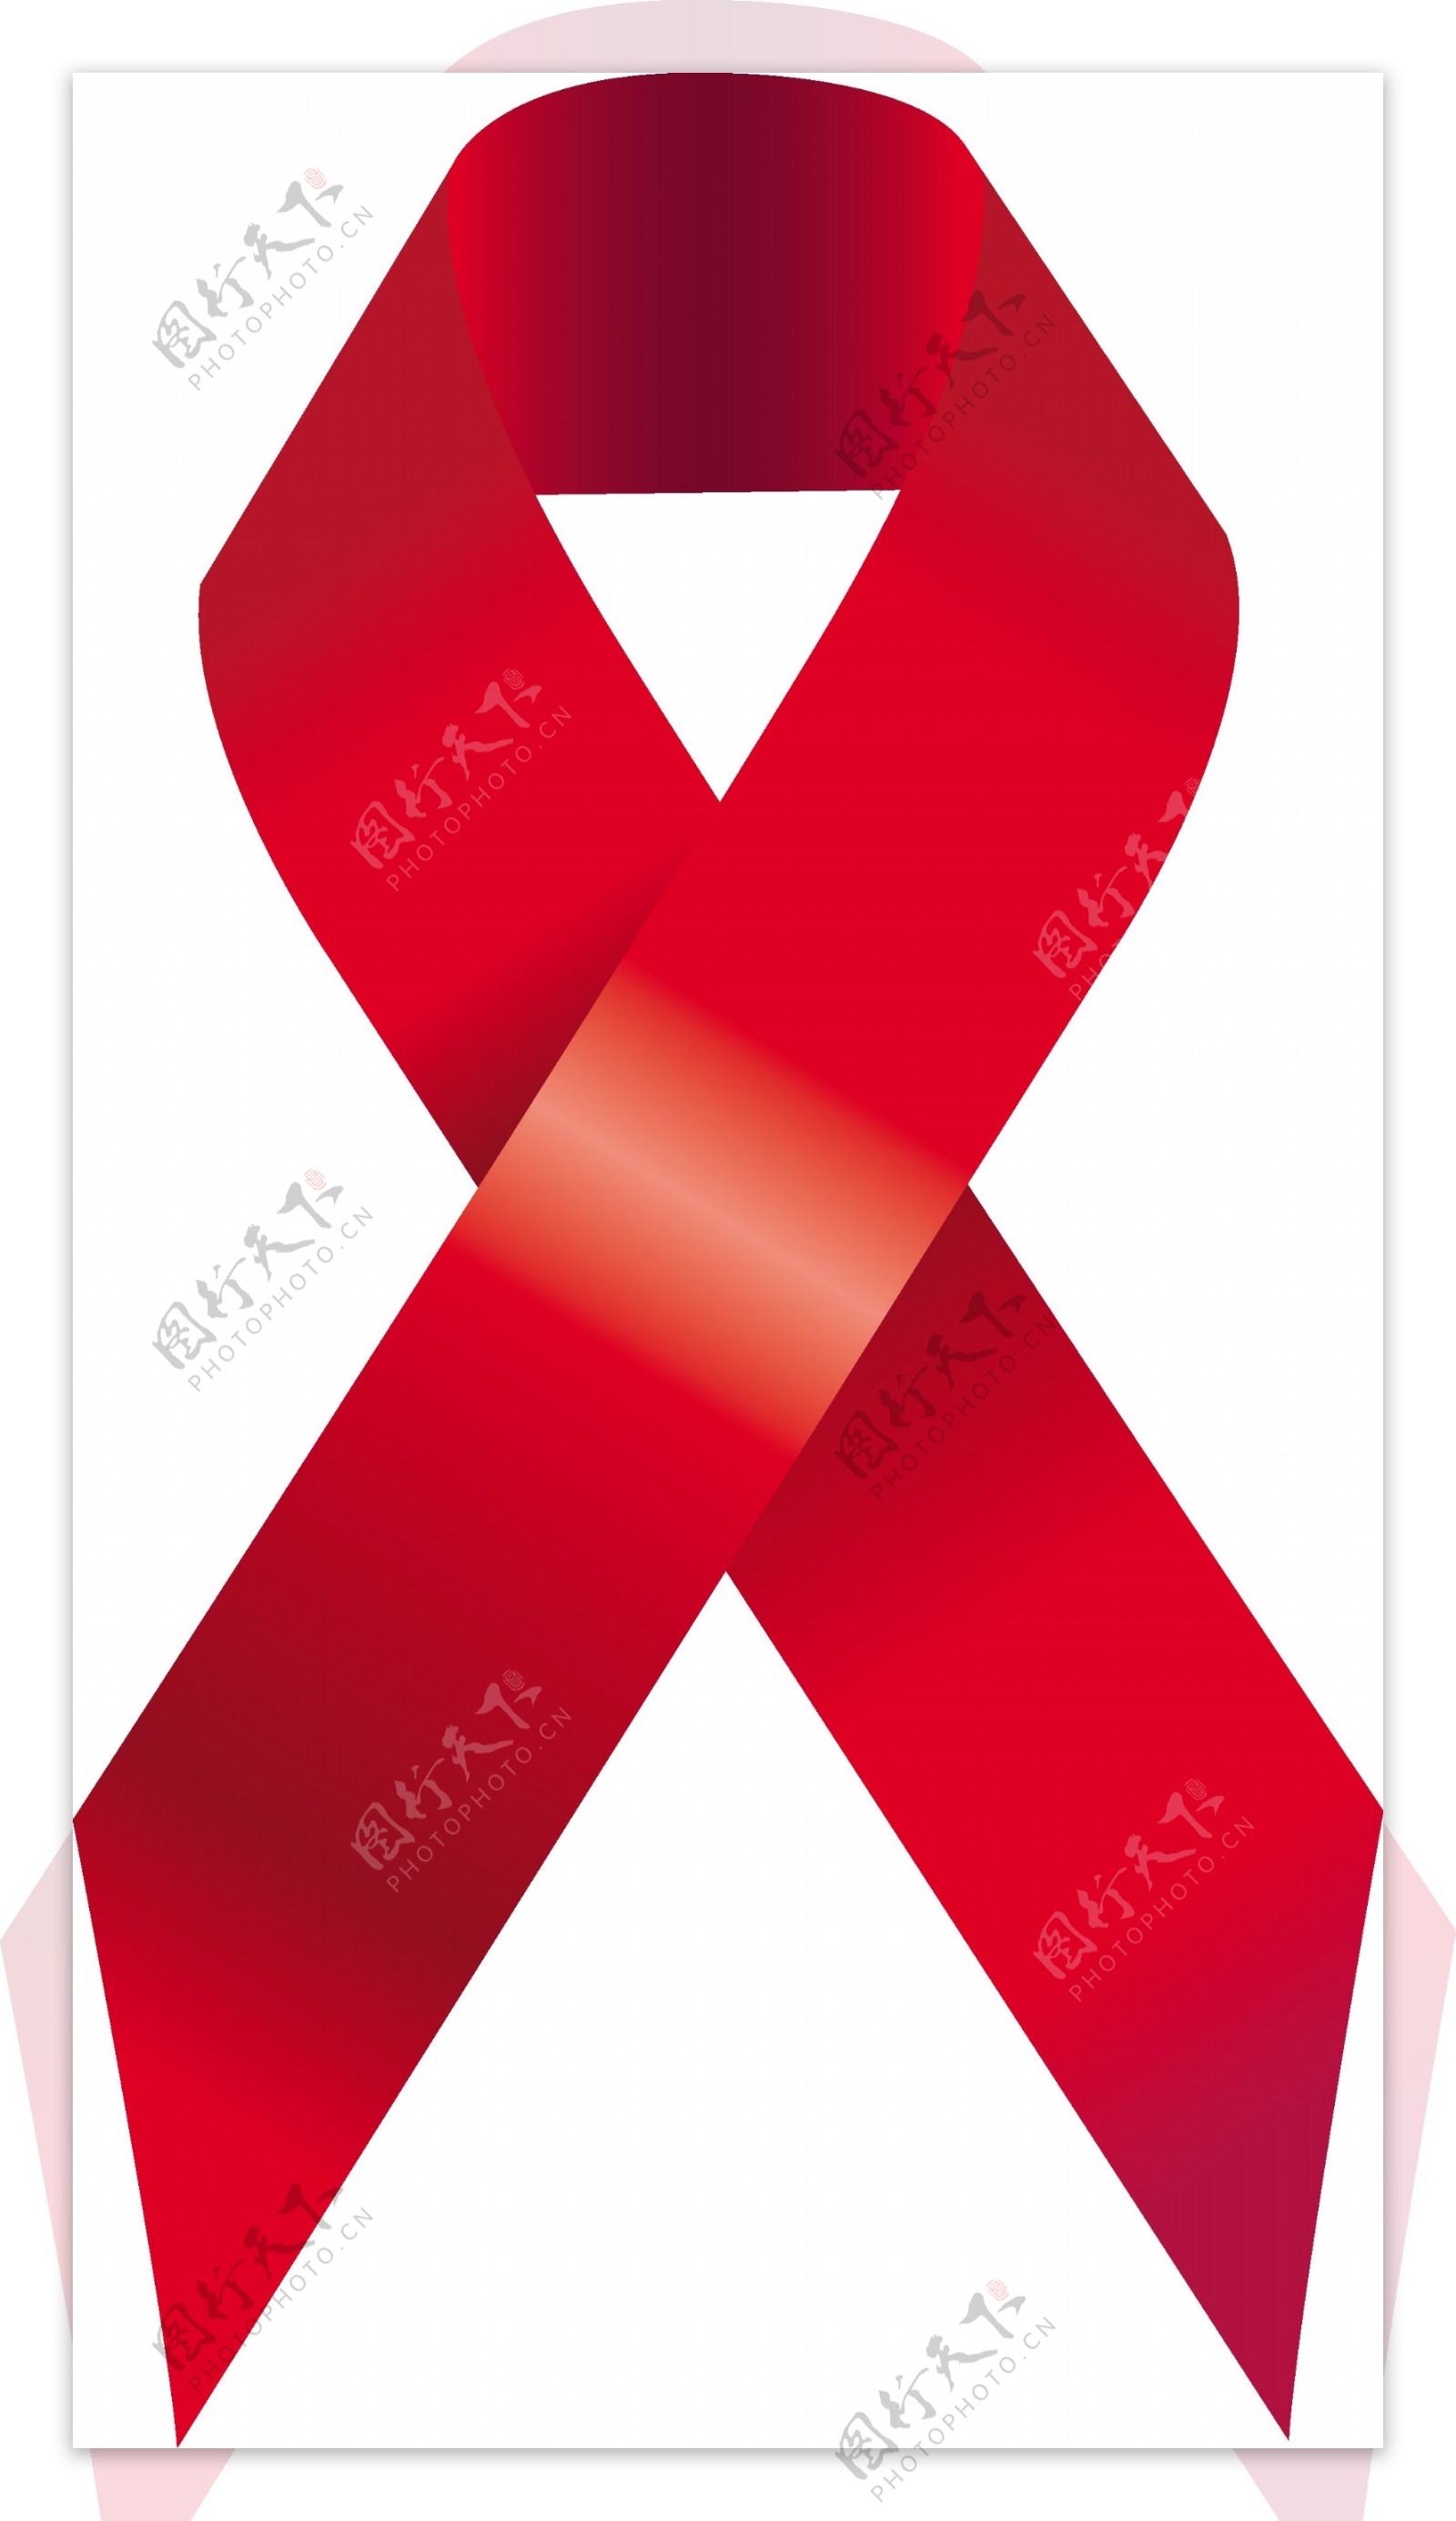 艾滋病标志矢量素材